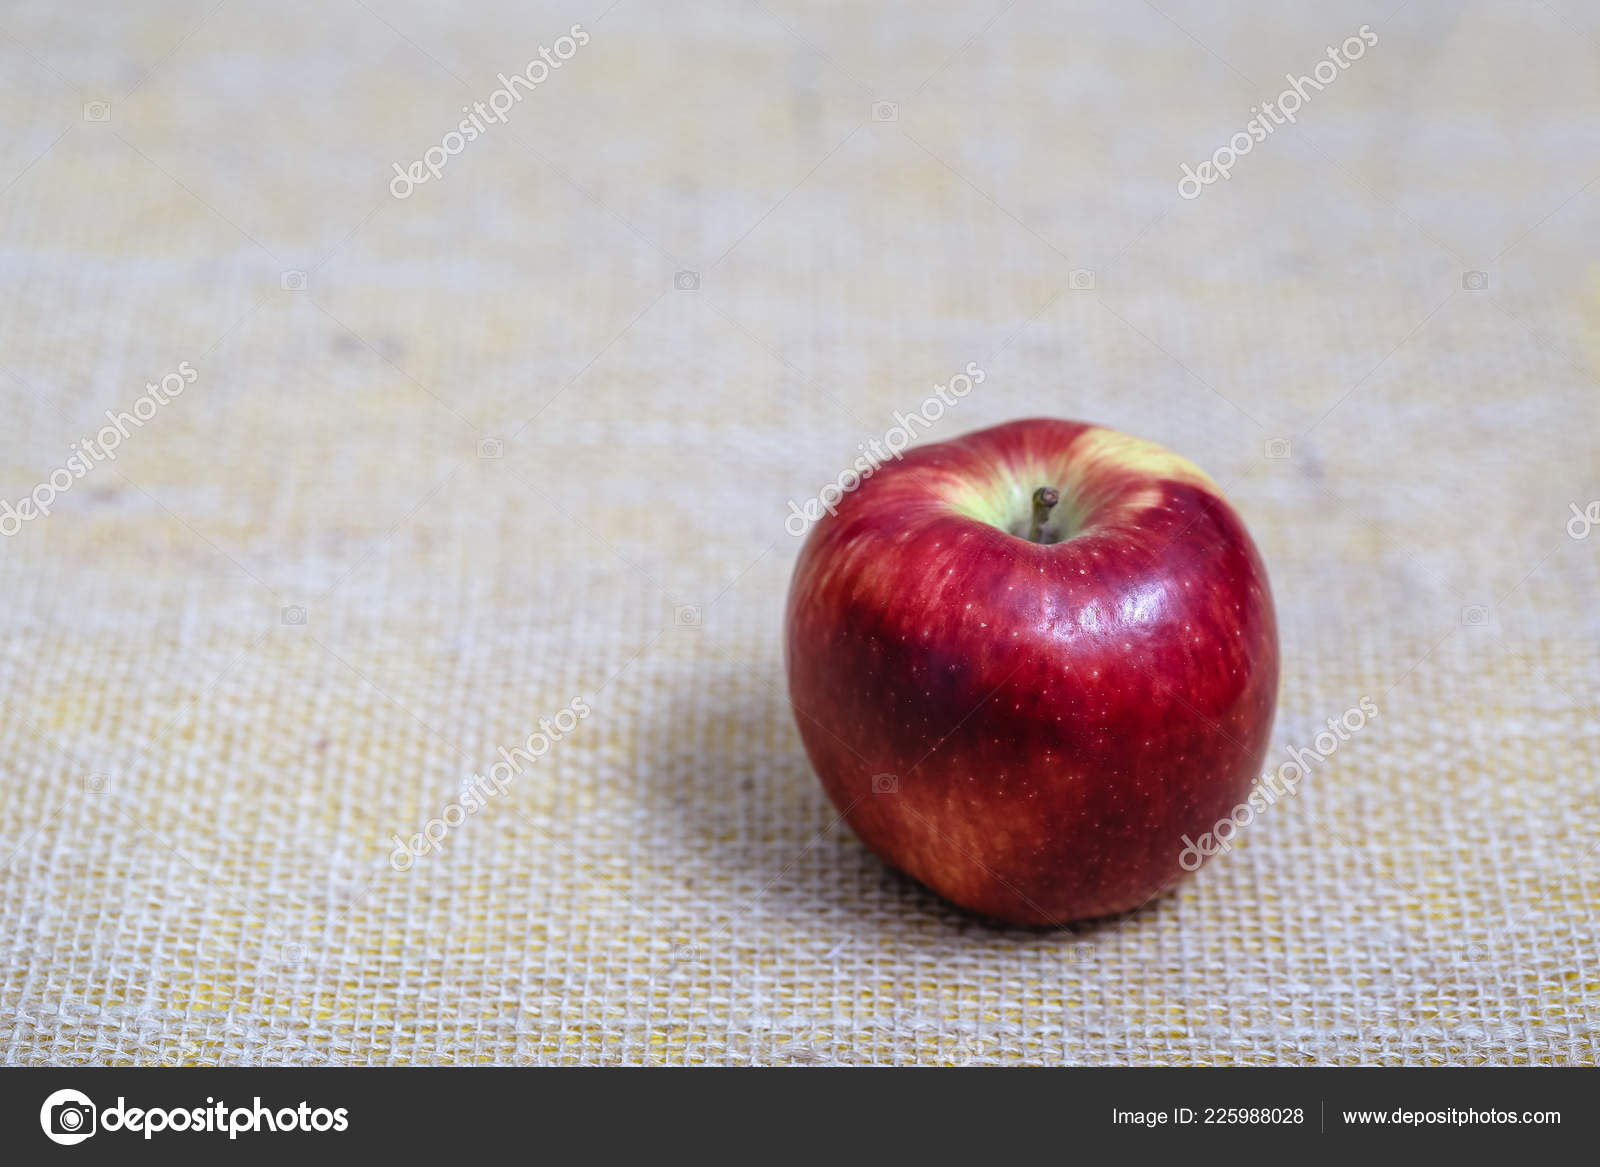 Kostlicher Roter Apfel Isolierter Hintergrund Zum Ausschneiden Photoshop Isolierte Fruchte Stockfotografie Lizenzfreie Fotos C Robertohunger Depositphotos